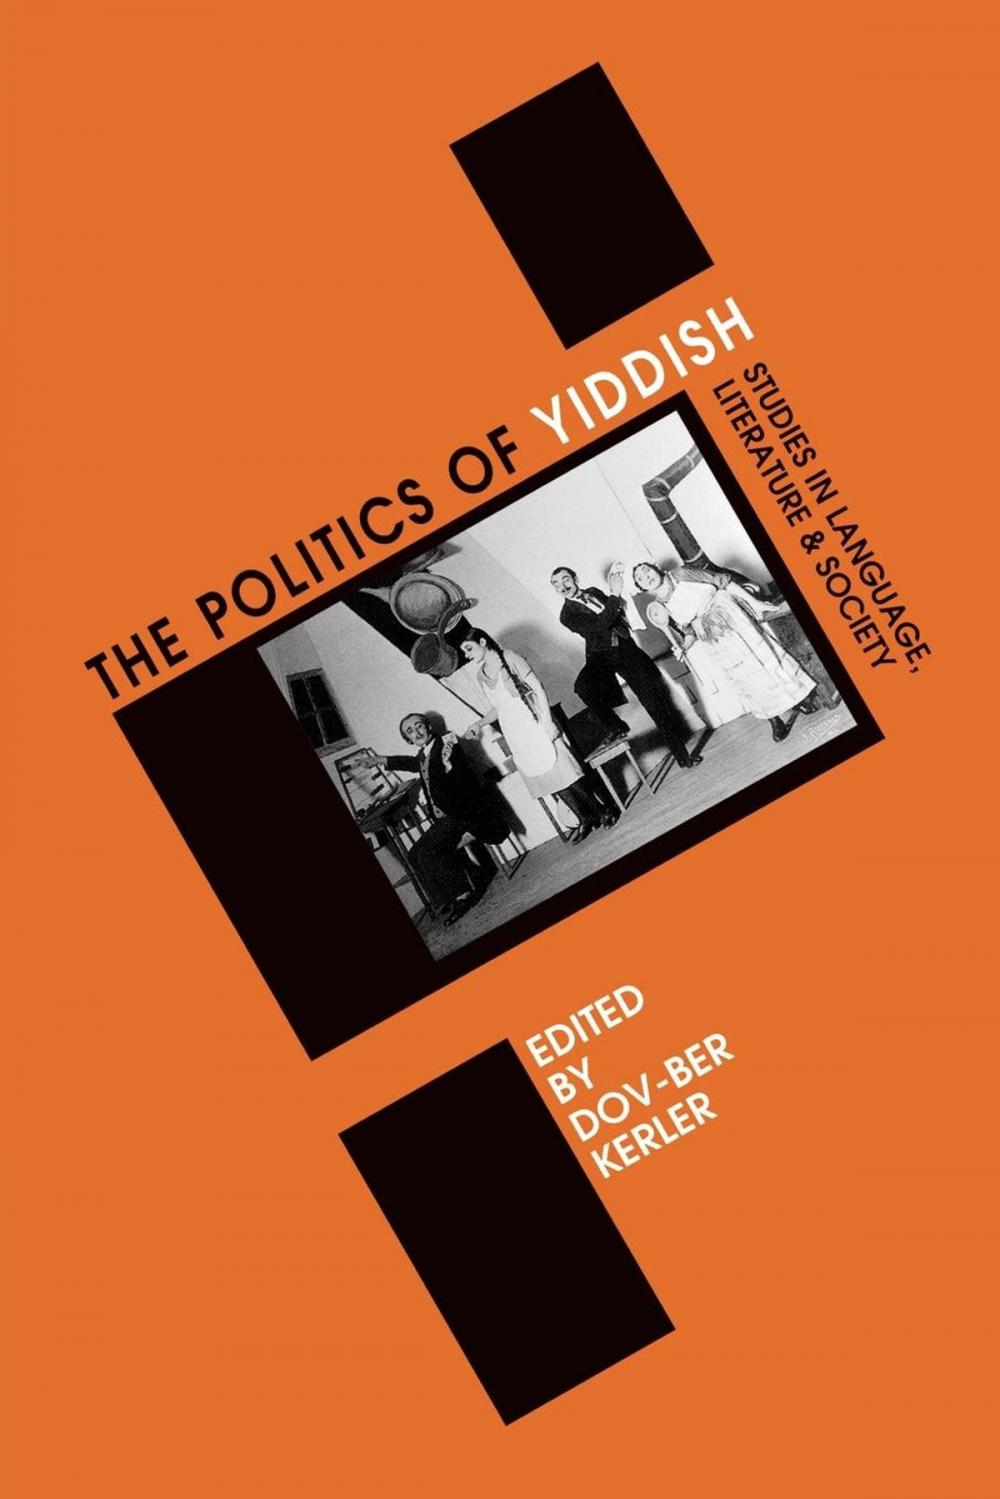 Big bigCover of Politics of Yiddish